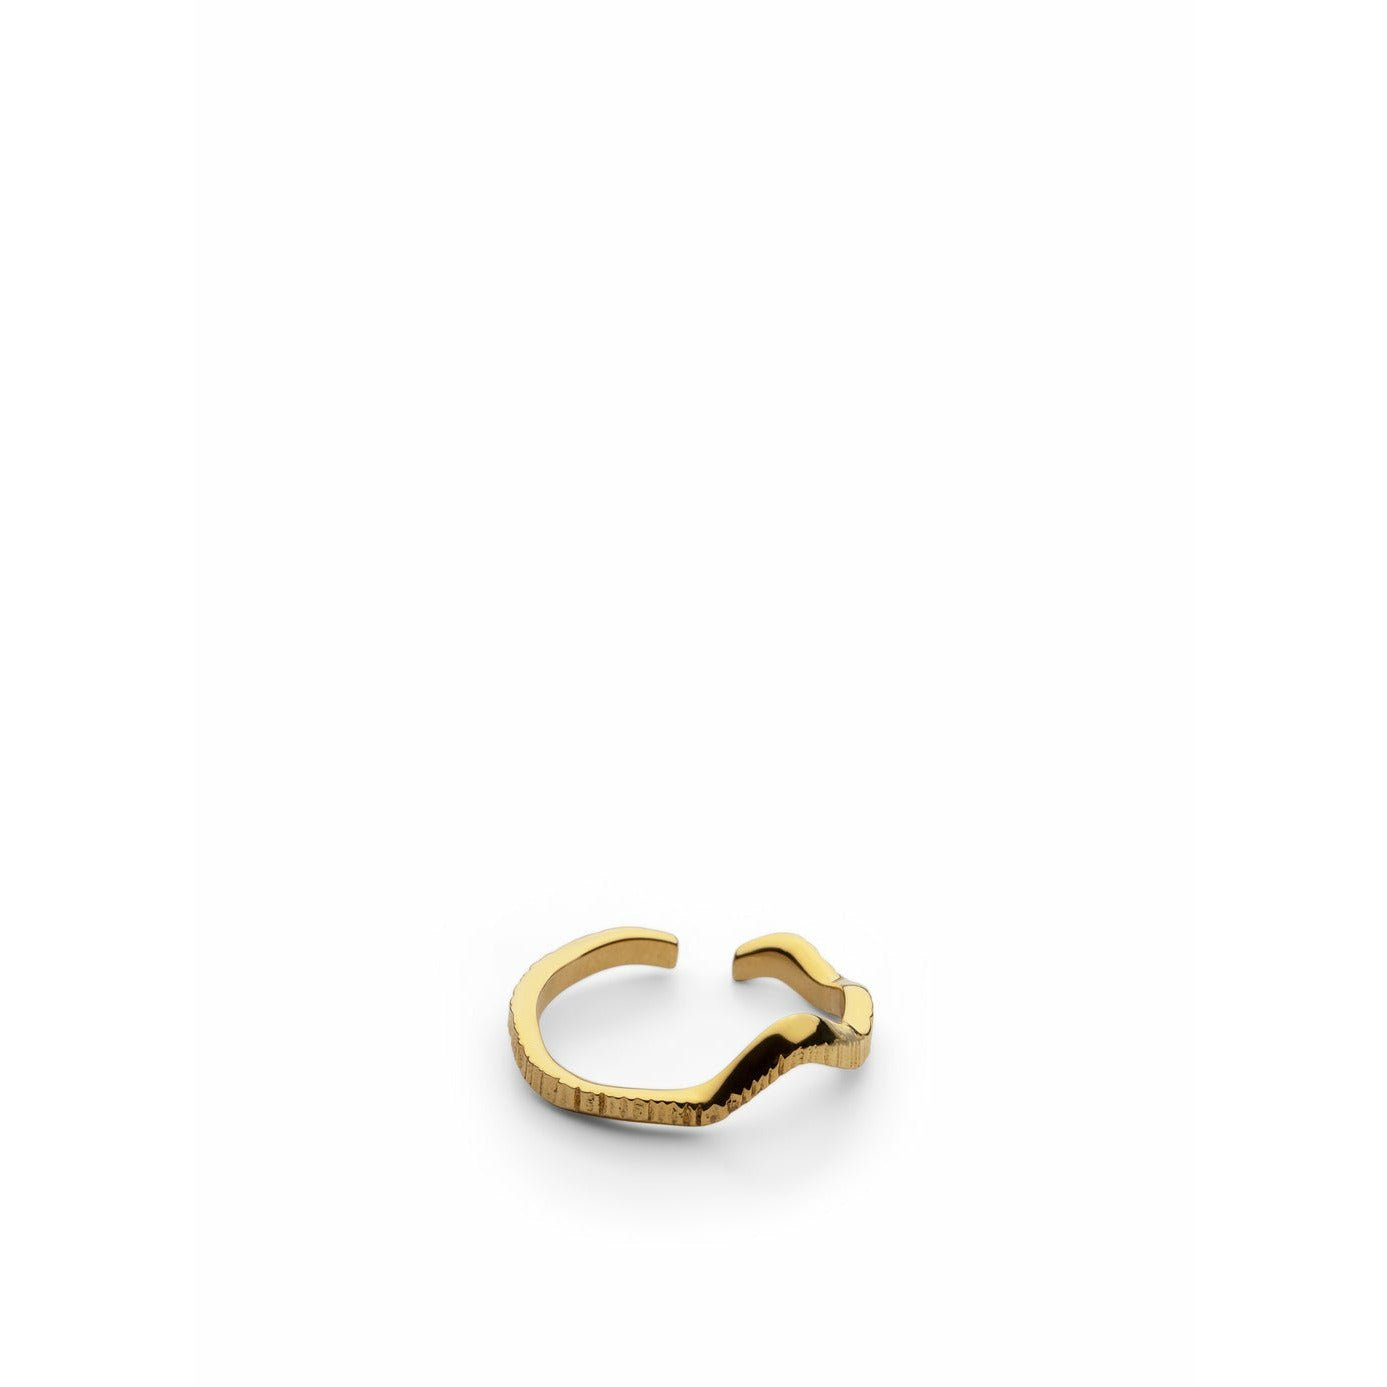 Skultuna Chêne Ring Small Gold Plated, ø1,6 Cm